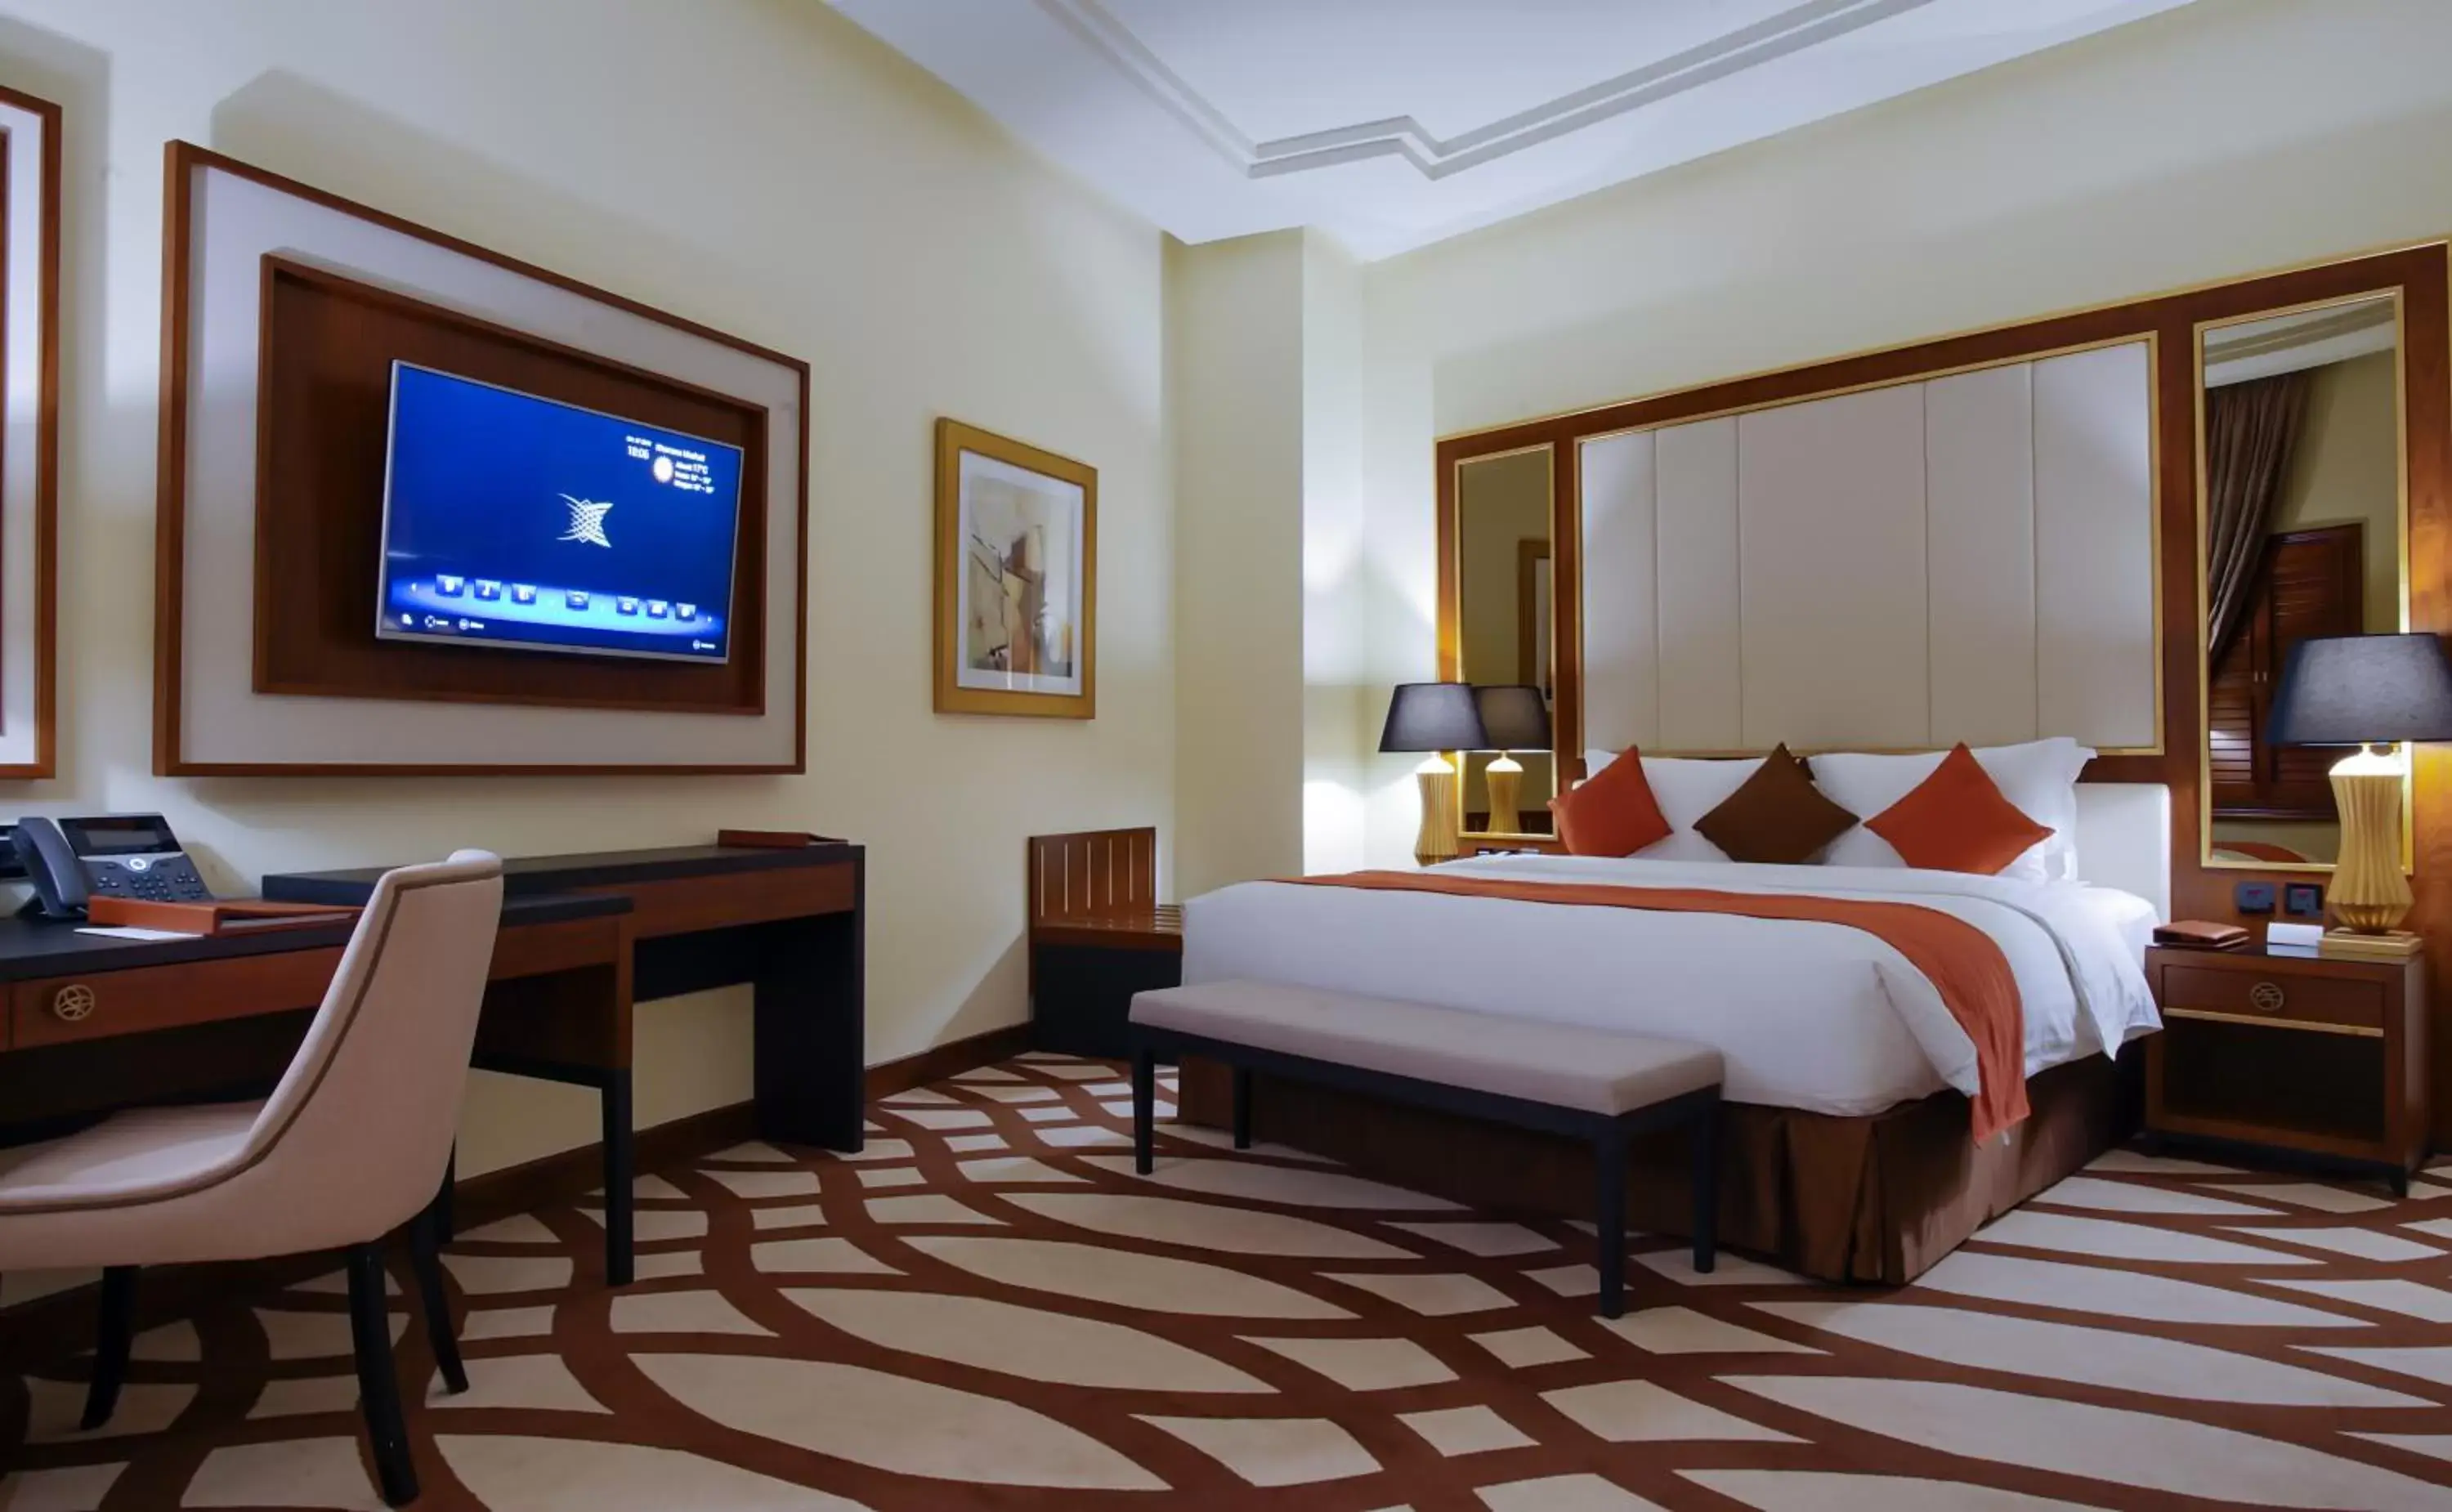 Bed in Bayat Hotel